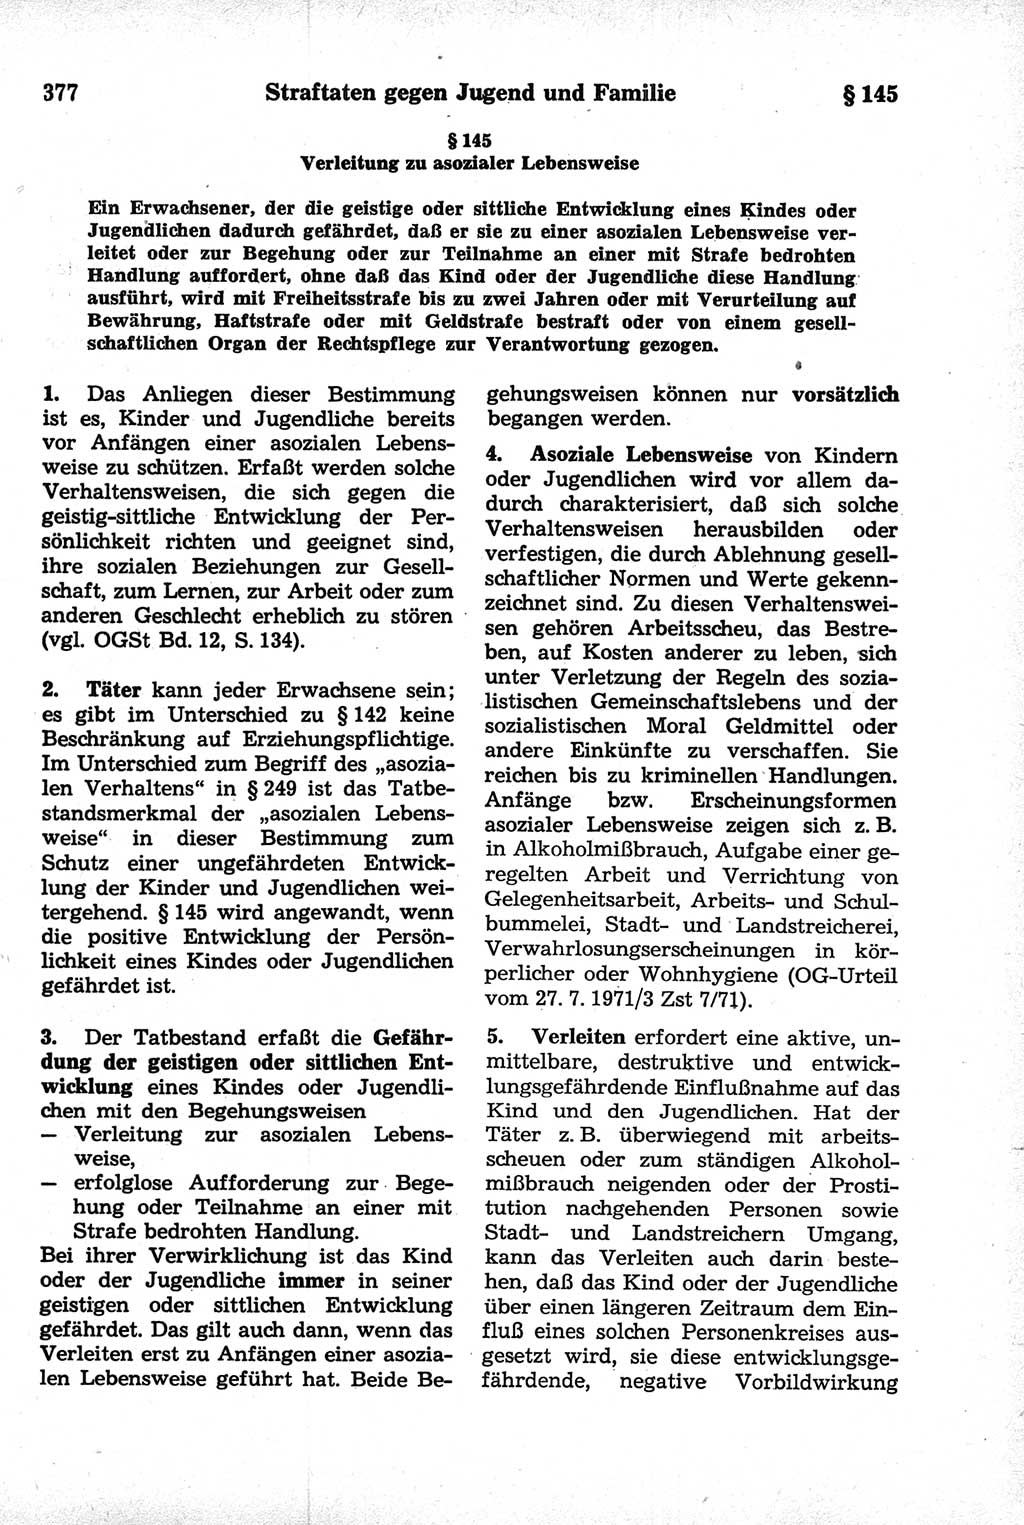 Strafrecht der Deutschen Demokratischen Republik (DDR), Kommentar zum Strafgesetzbuch (StGB) 1981, Seite 377 (Strafr. DDR Komm. StGB 1981, S. 377)